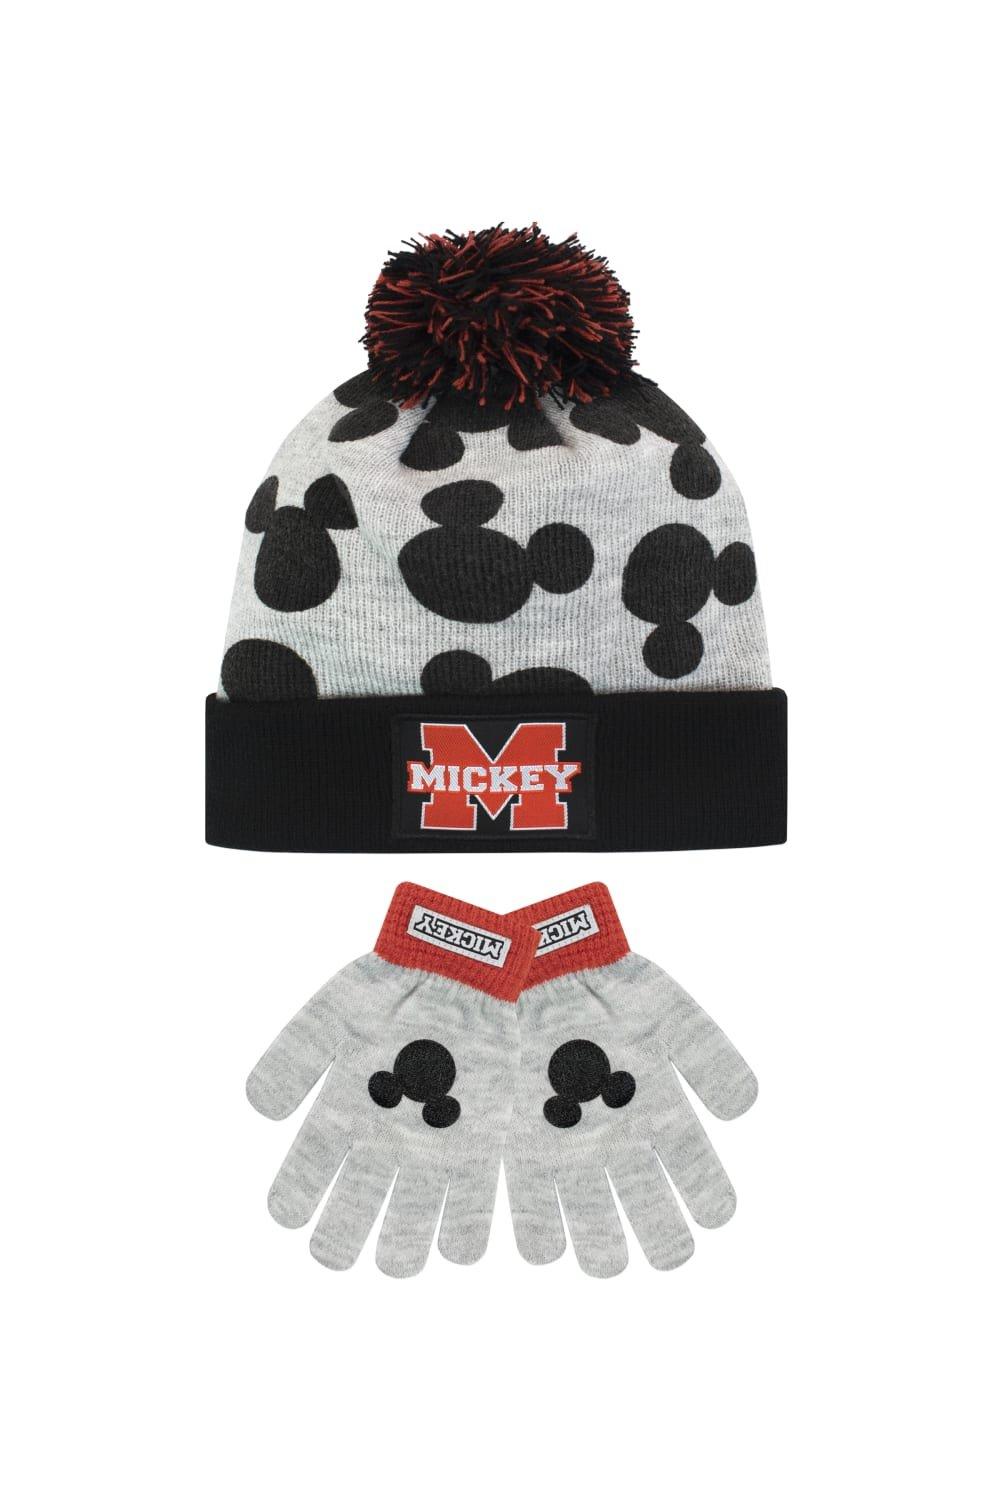 шапка modniki для мальчиков и девочек р56 темно синяя Детский комплект шапки и перчаток с Микки Маусом Disney, серый